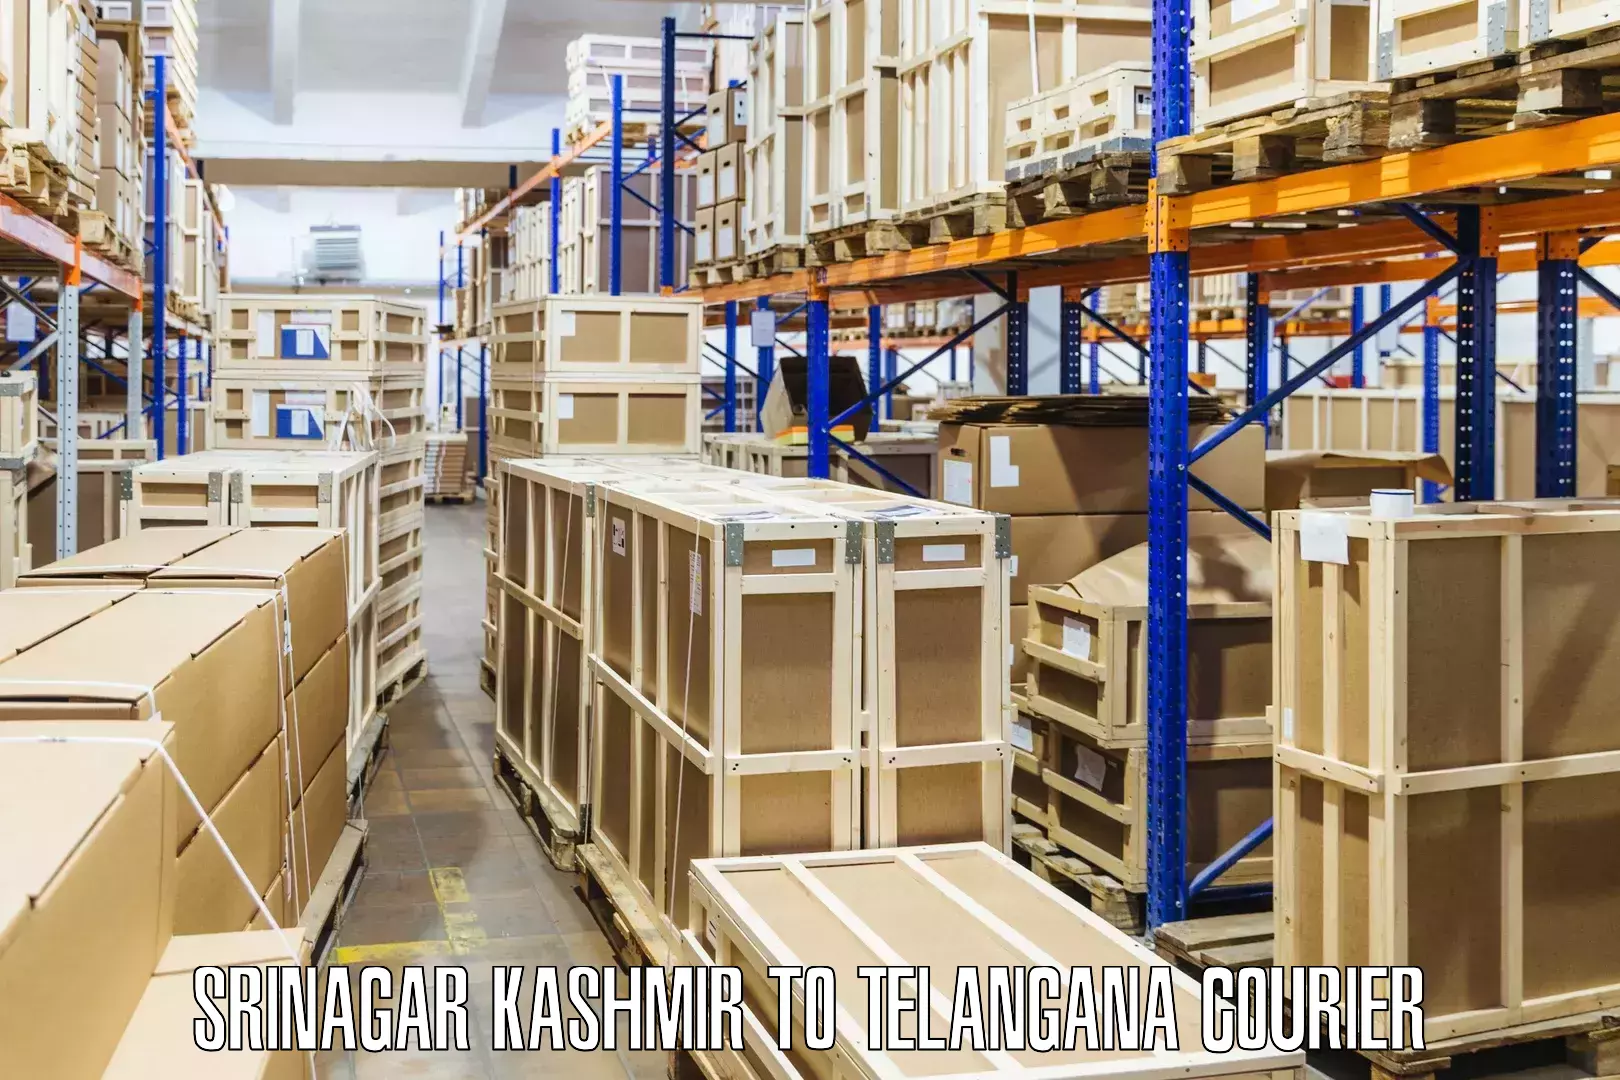 Nationwide shipping capabilities Srinagar Kashmir to Cherla